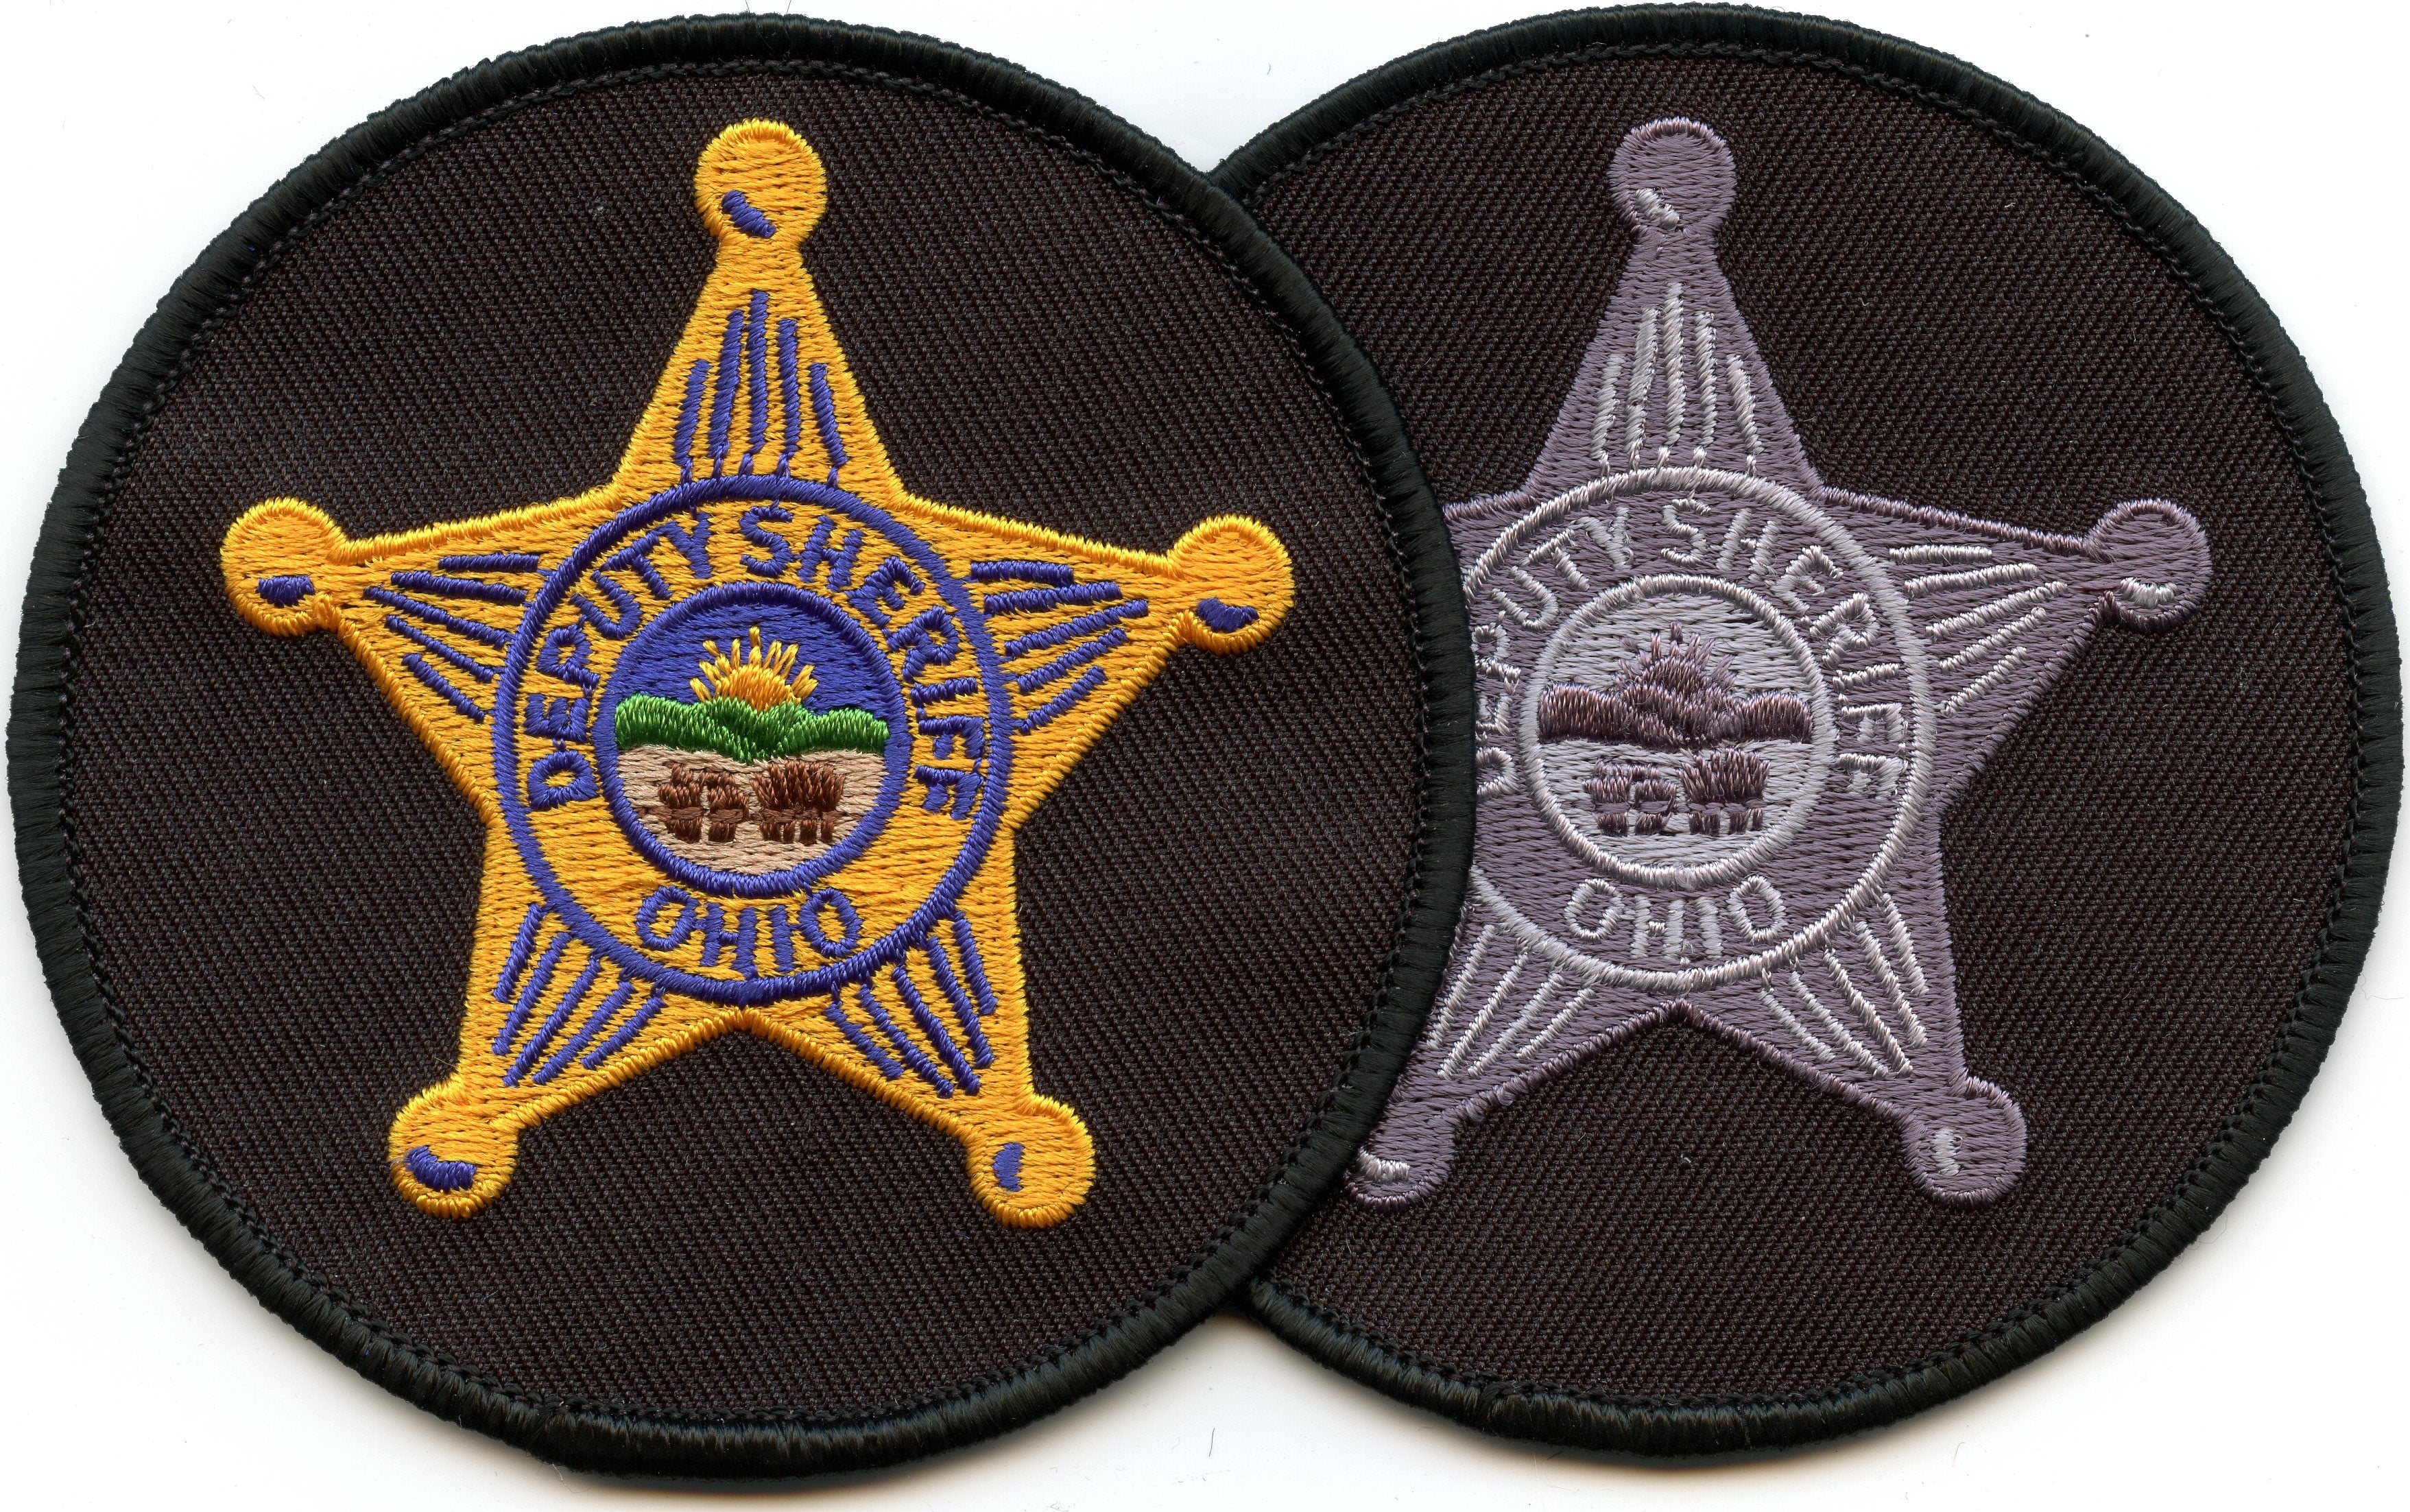 Ohio Deputy Sheriff Star Patch 3.5" Diameter